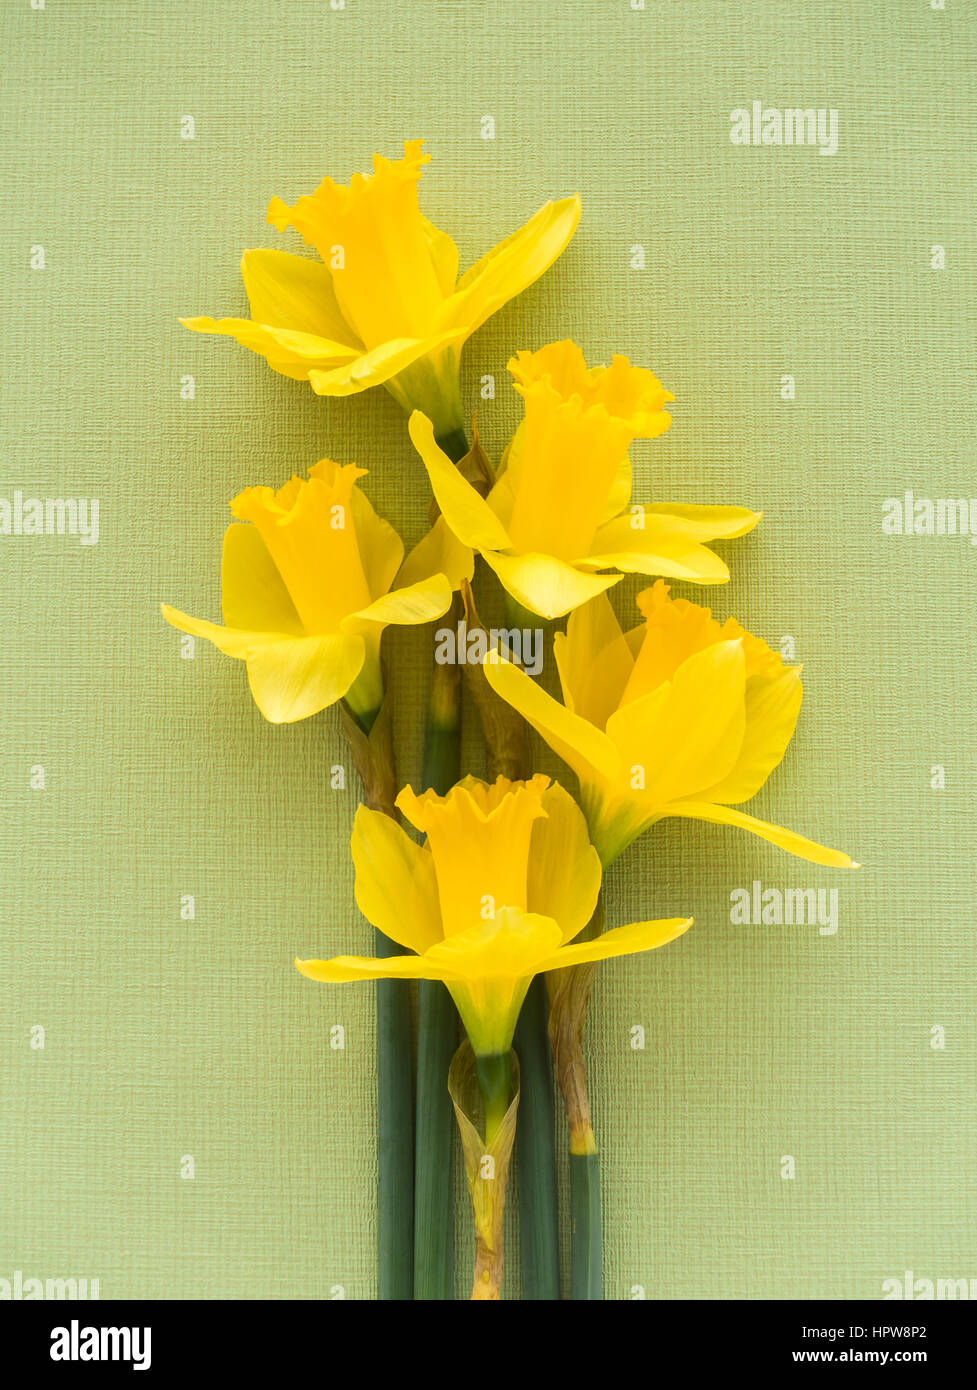 Acercamiento de cinco jersey amarillo dulce orgullo narcisos acostado en verde pálido suave fondo de textura. Foto de stock